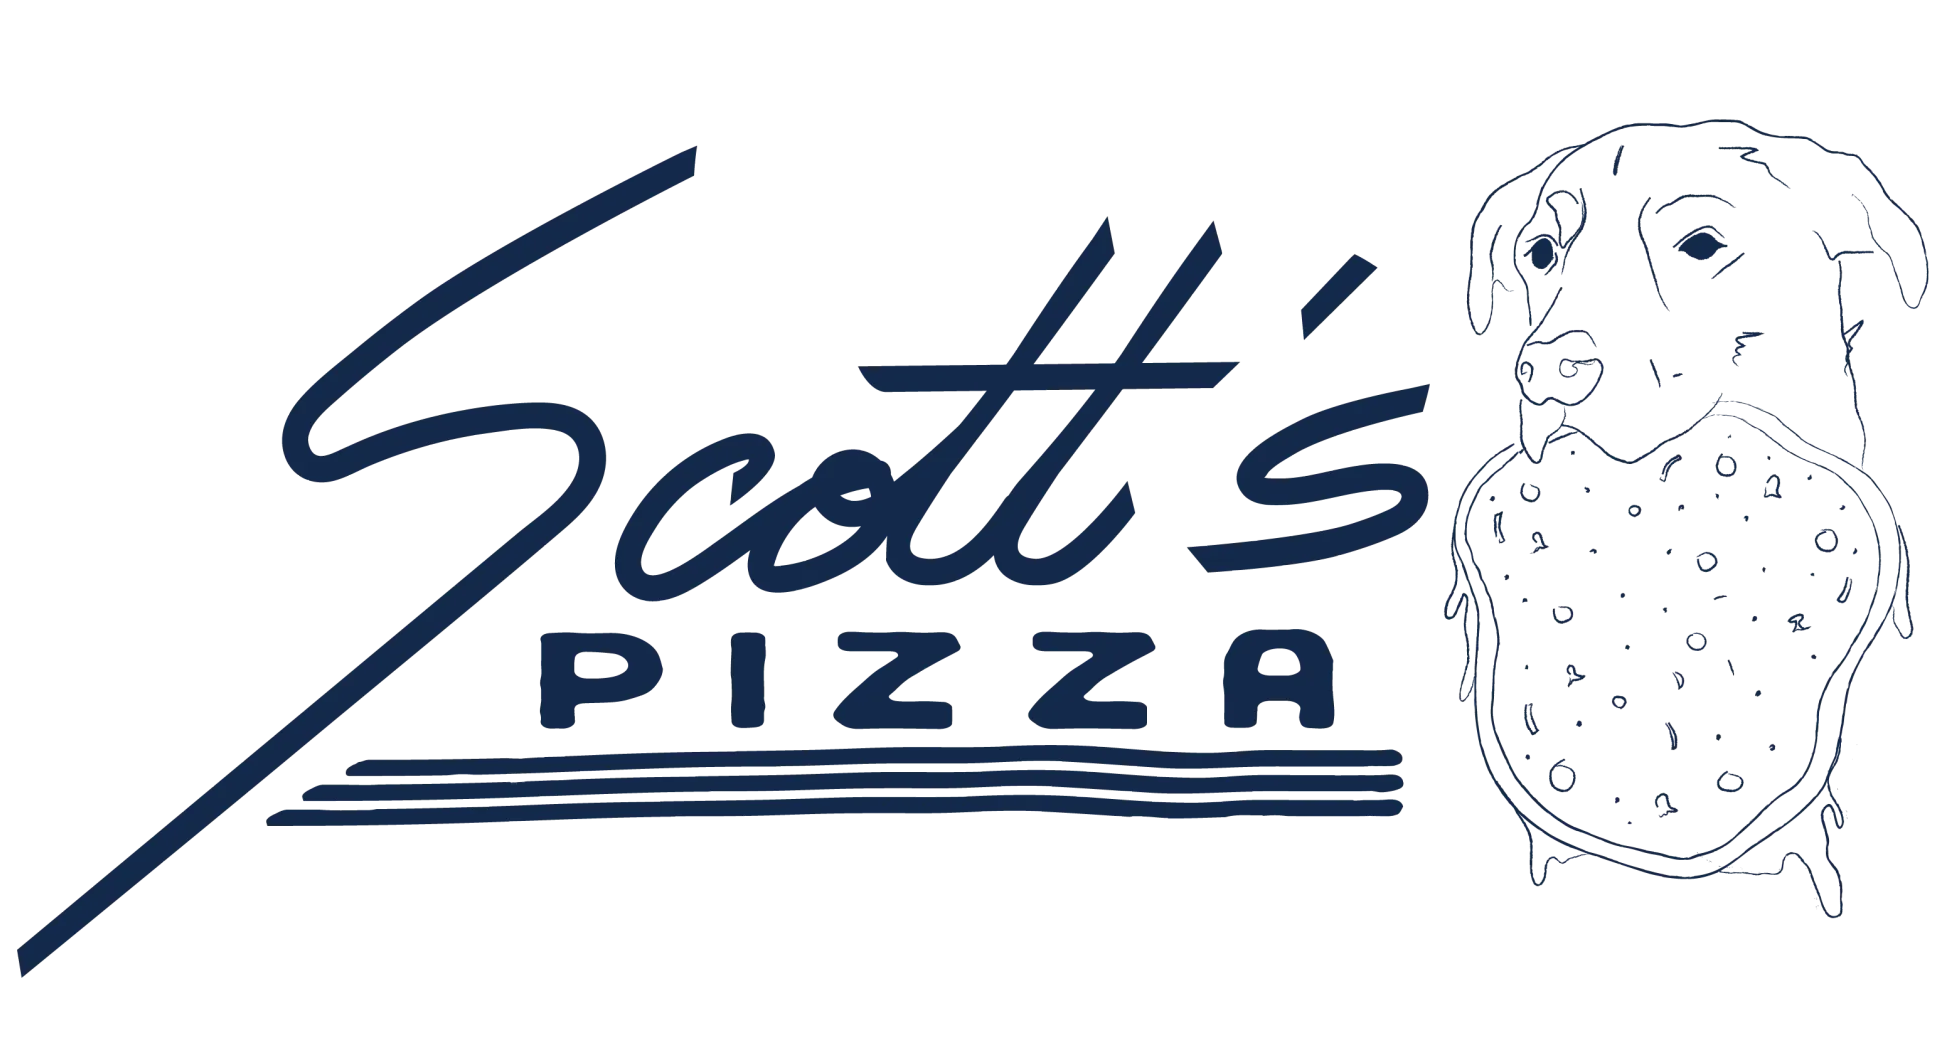 Scott's Pizza Logo